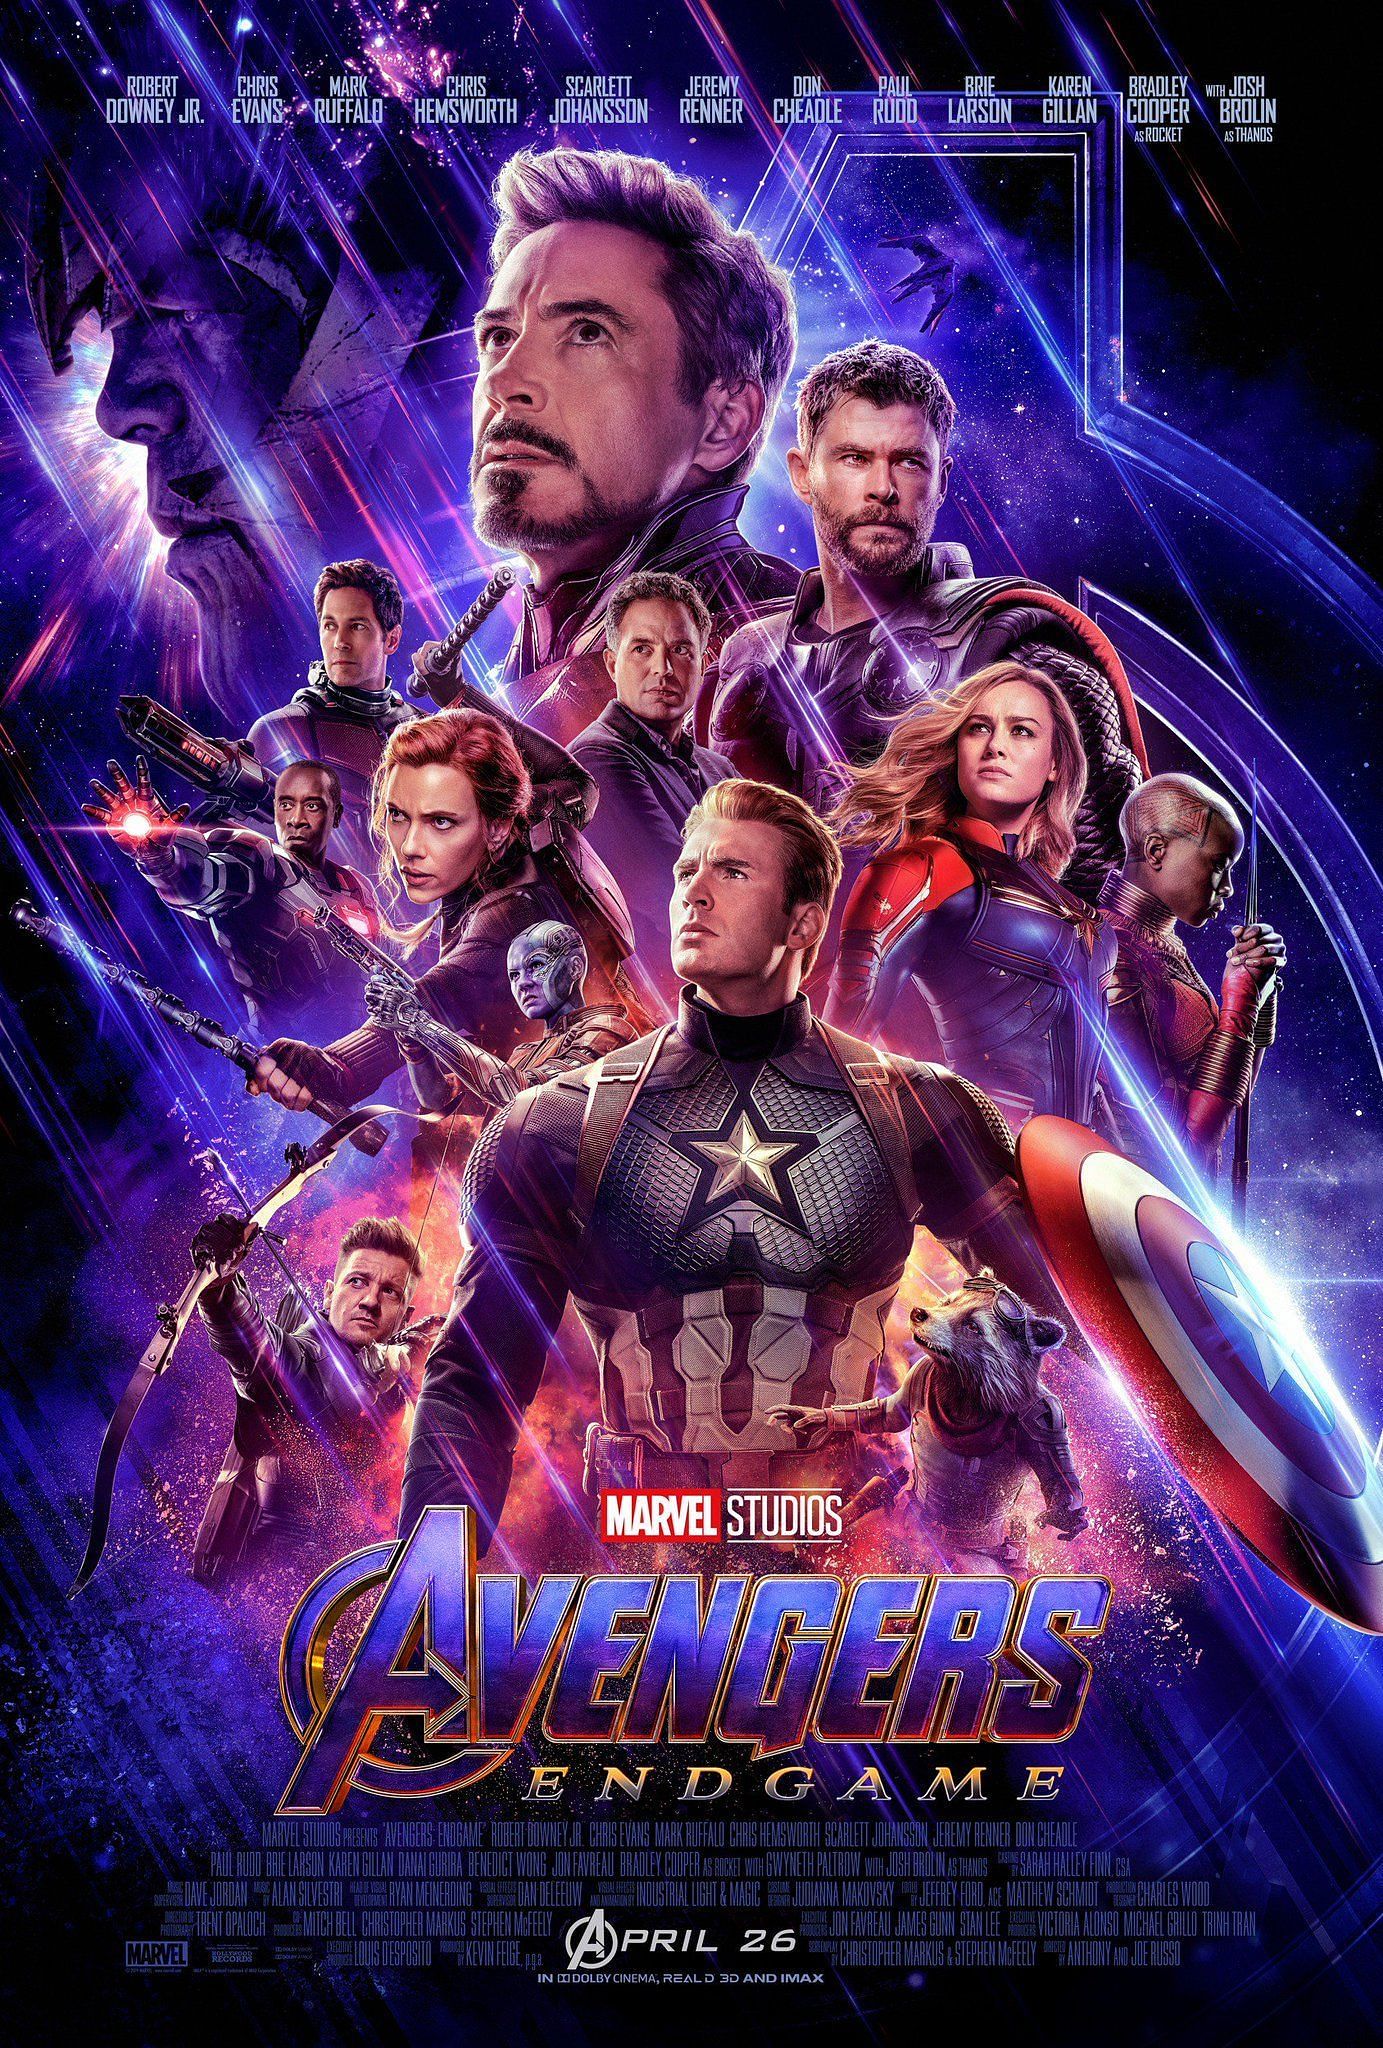 Avengers: Endgame Poster (image via Twitter @Avengers)